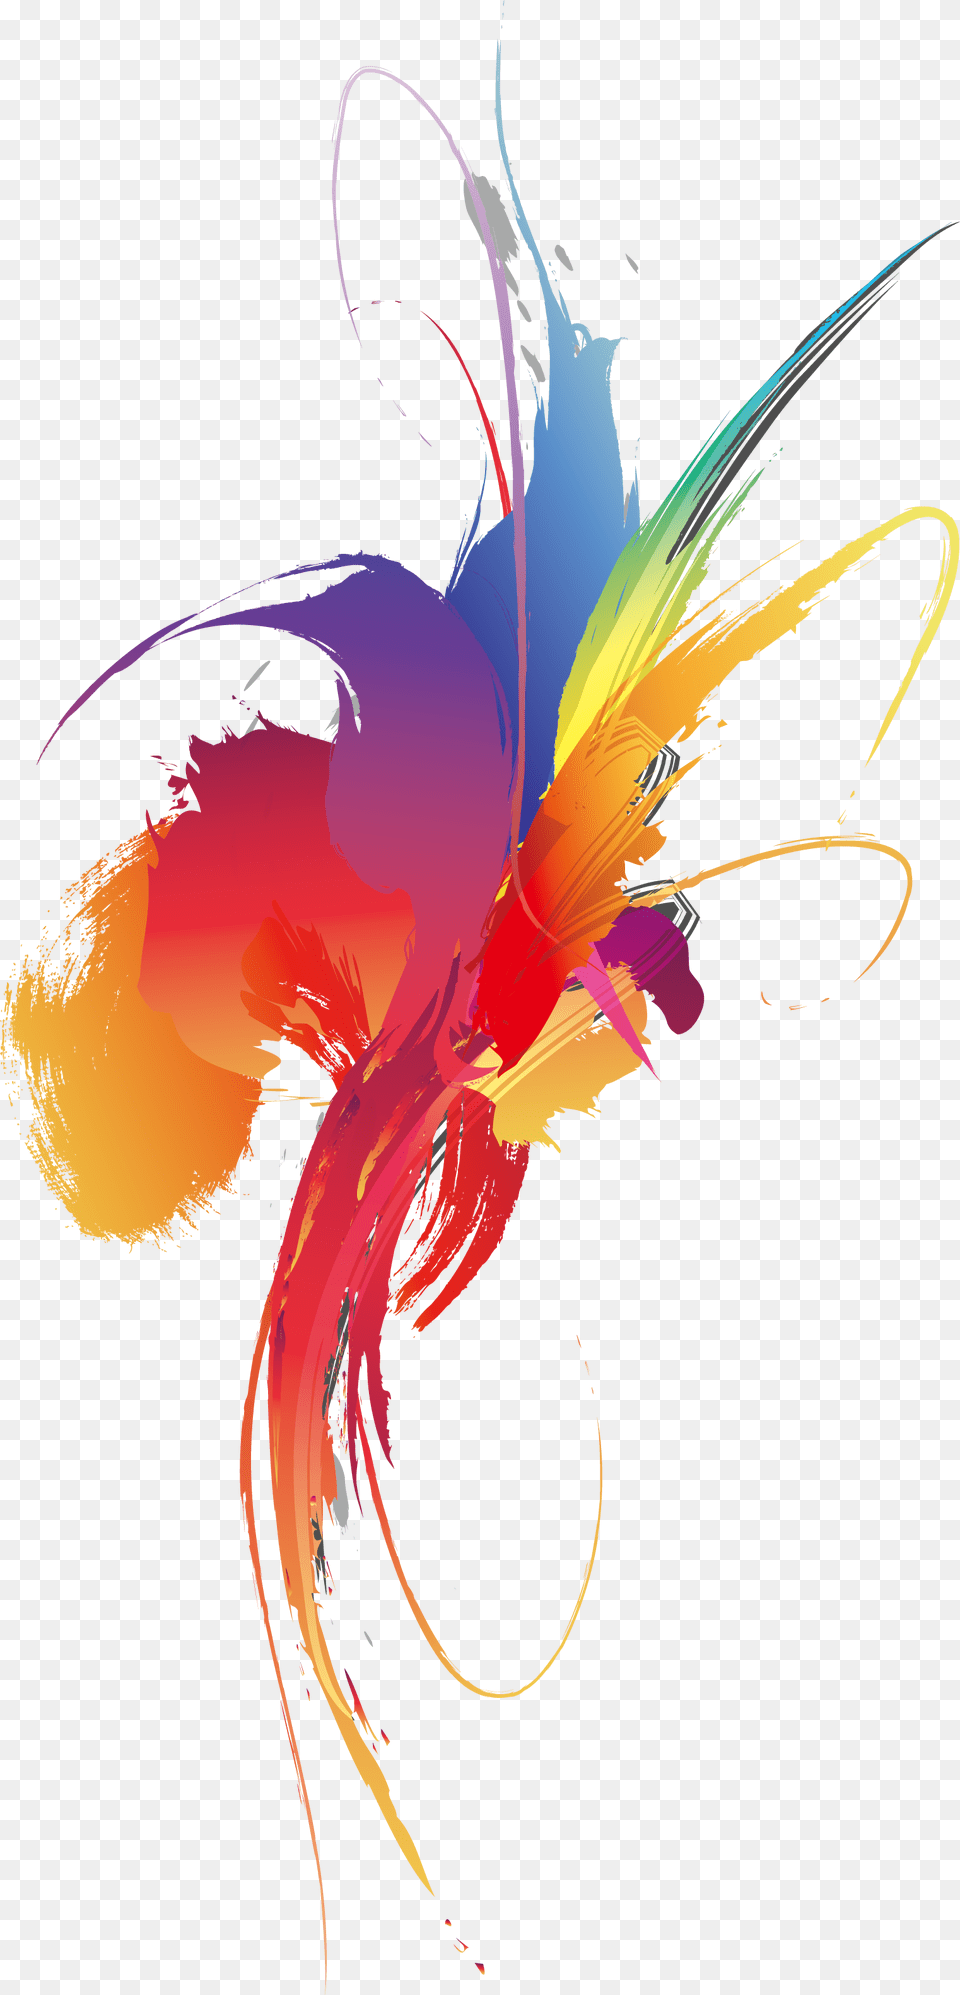 Color Wallpaper Colorful Smear Vector Ink Splash, Art, Floral Design, Graphics, Modern Art Free Png